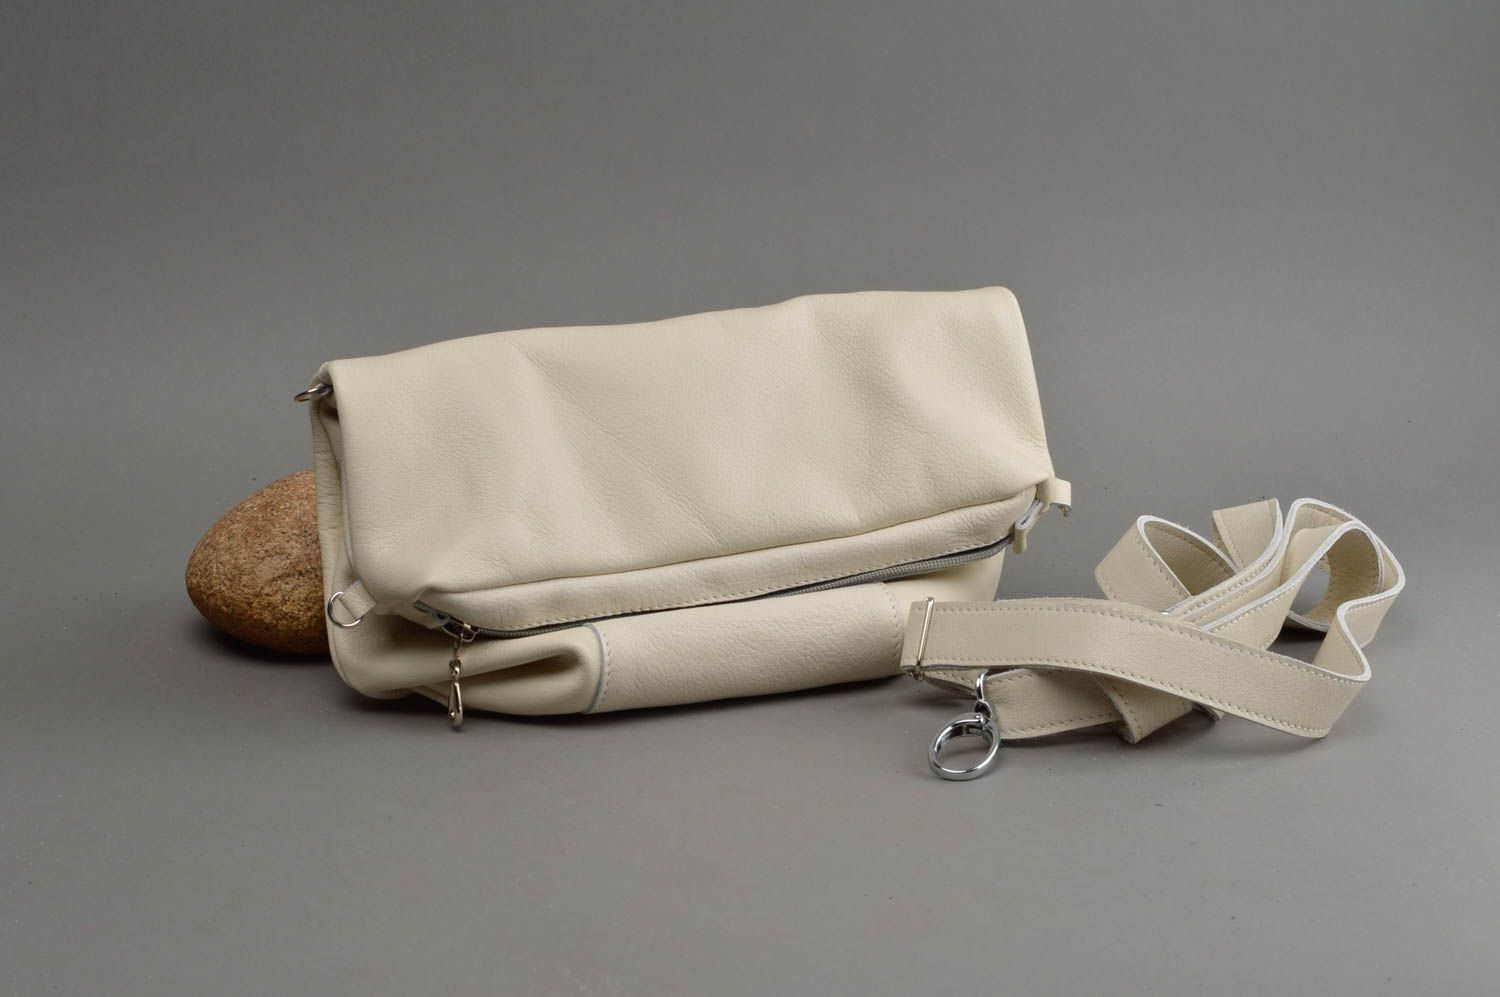 Large handmade genuine leather bag stylish shoulder bag leather goods ideas photo 1